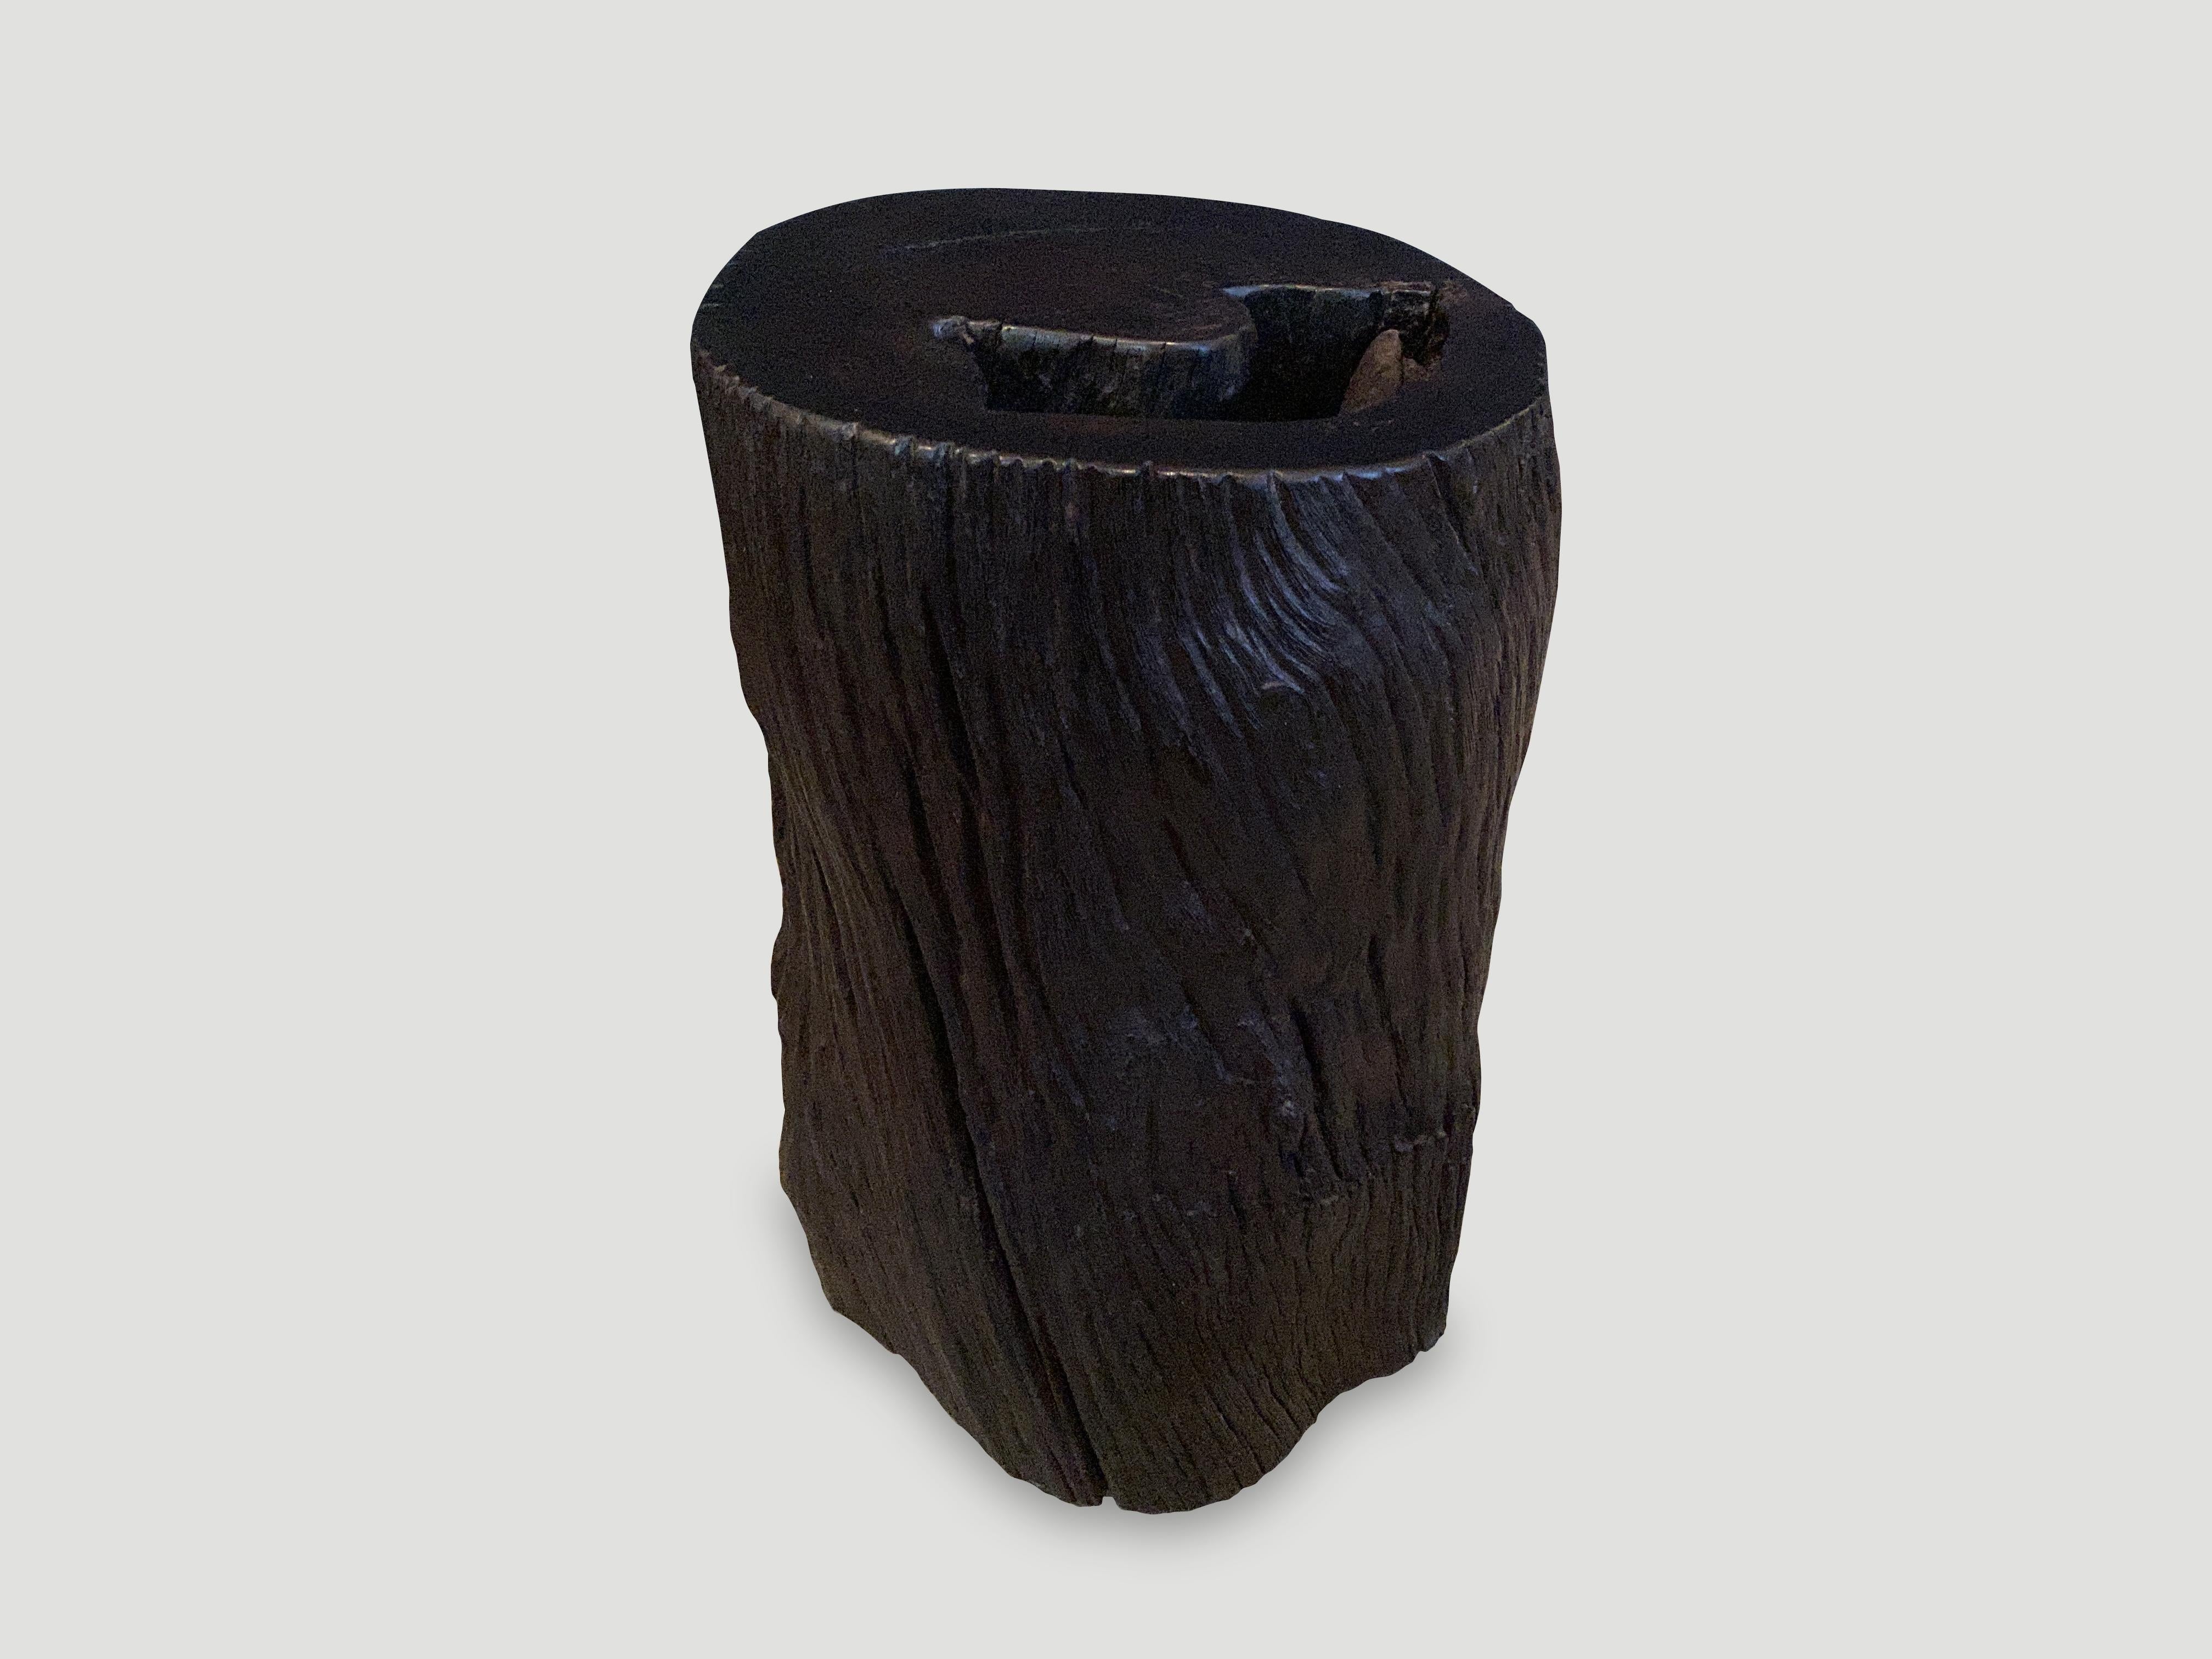 Zylinder-Beistelltisch oder -Hocker aus Ulin-Holz. Auch bekannt als Eisenholz. Gekohlt, geschliffen und versiegelt und in eine minimalistische Form geschnitzt, wobei das natürliche organische Holz respektiert wird. Wir haben eine Politur